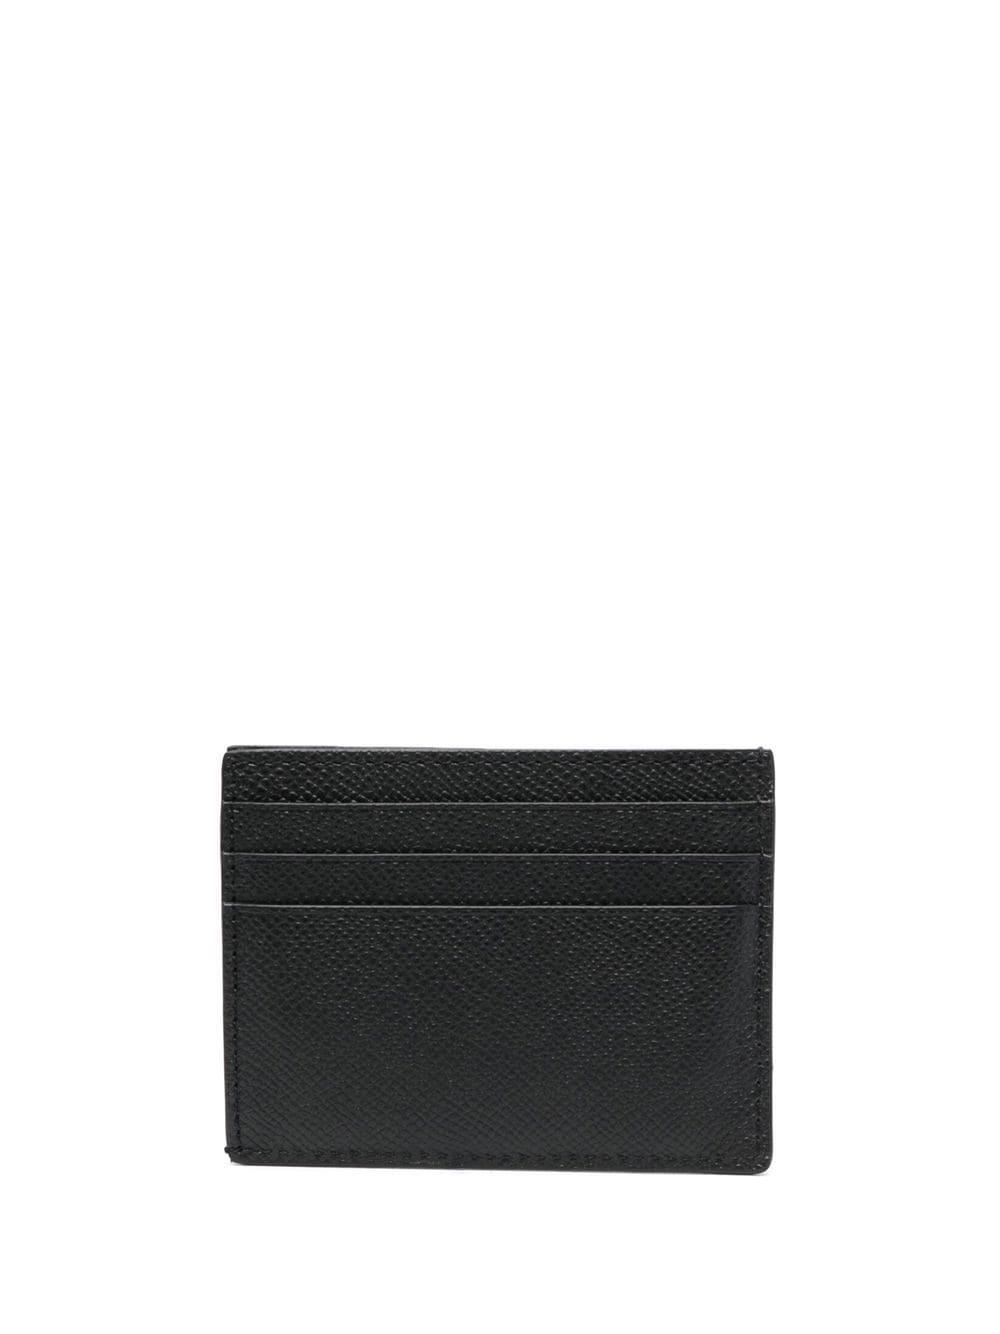 TOM FORD logo-plaque leather cardholder - Black